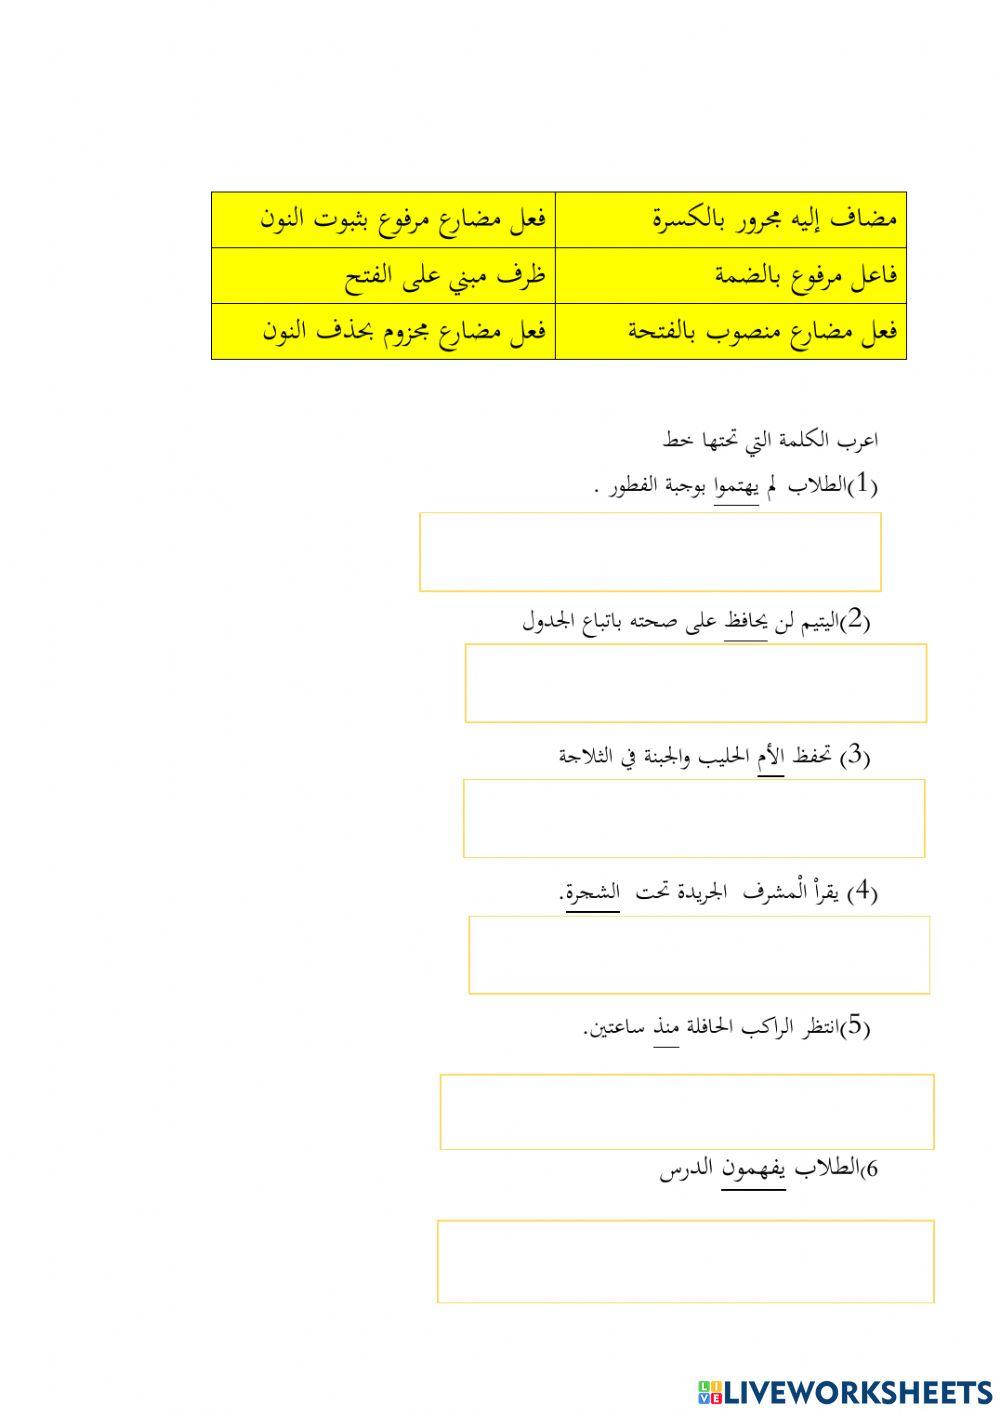 Pentaksiran bahasa arab ting 4